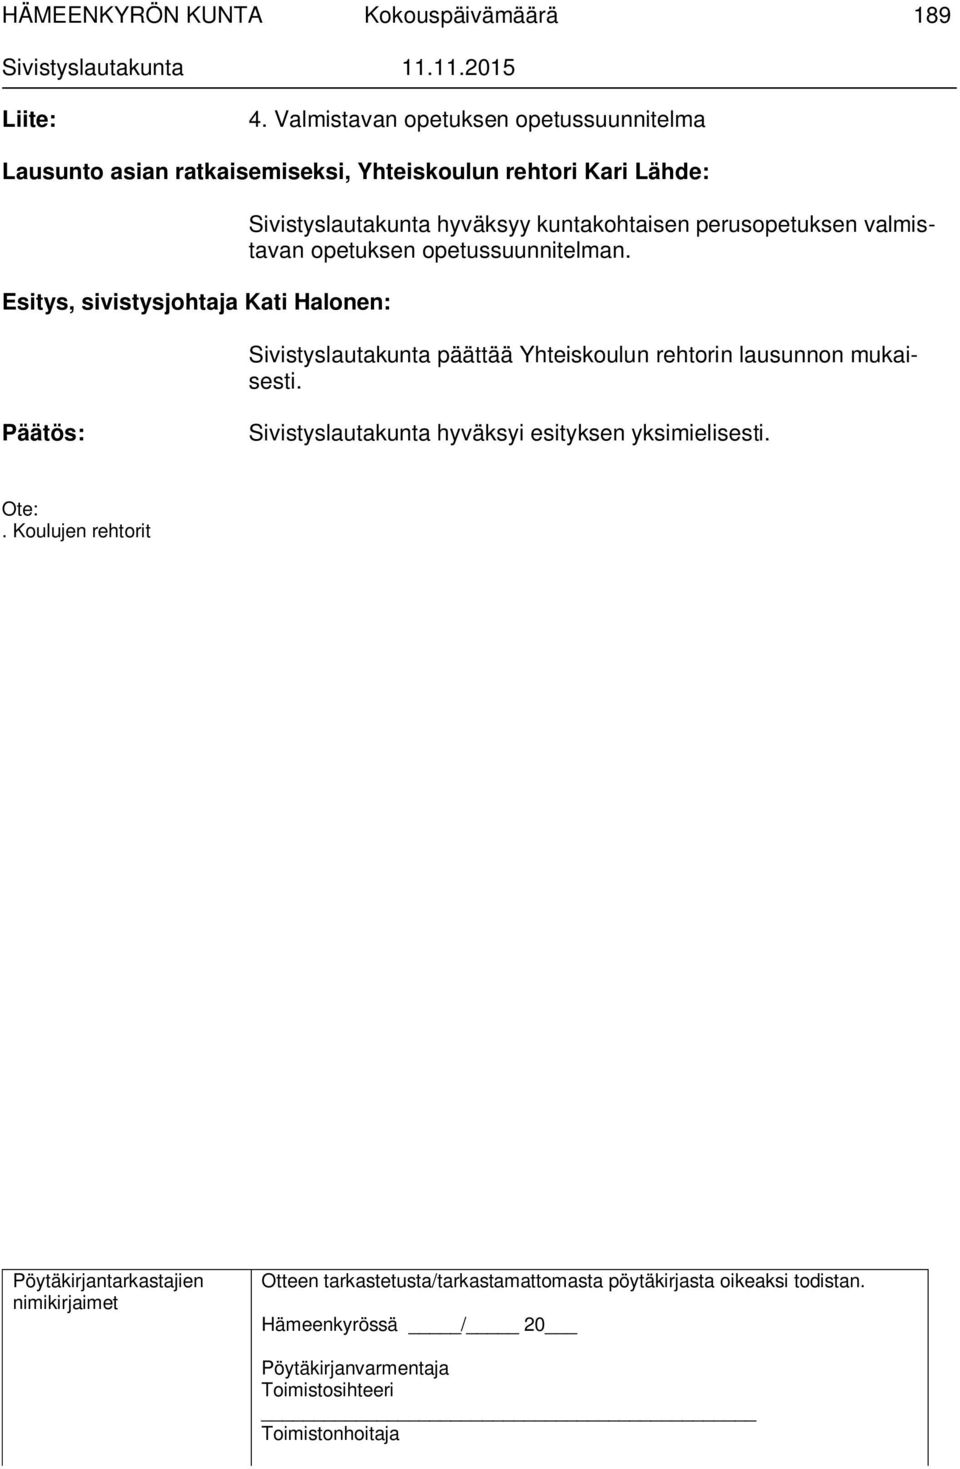 Lähde: Esitys, sivistysjohtaja Kati Halonen: Sivistyslautakunta hyväksyy kuntakohtaisen perusopetuksen